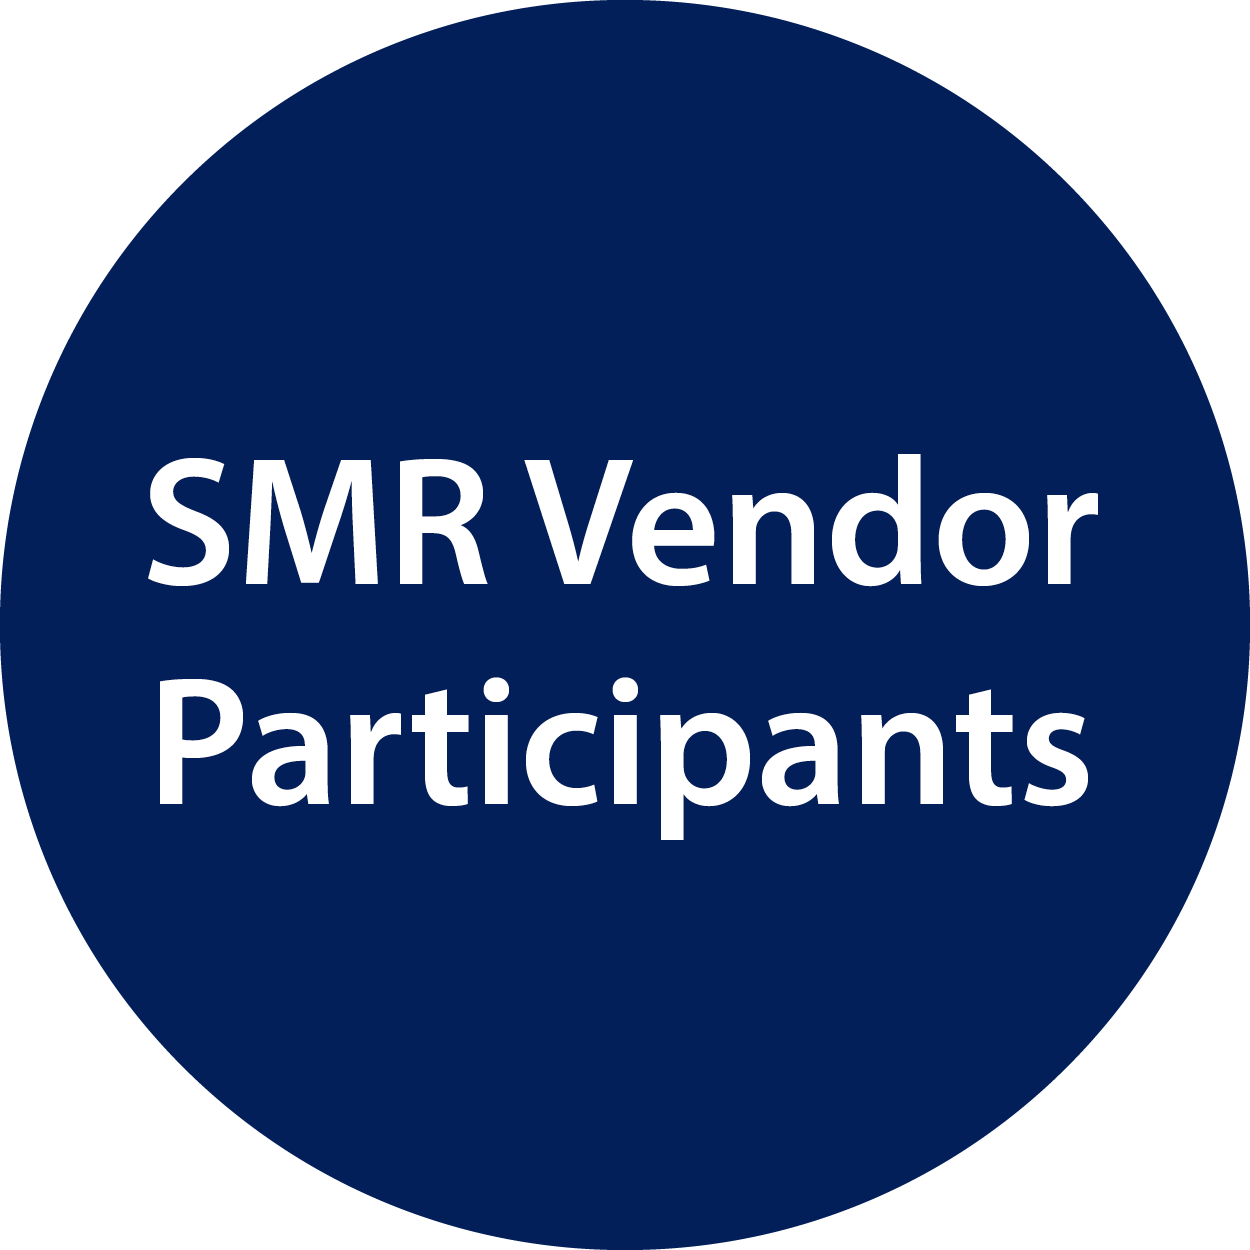 SMR Vendor Participants